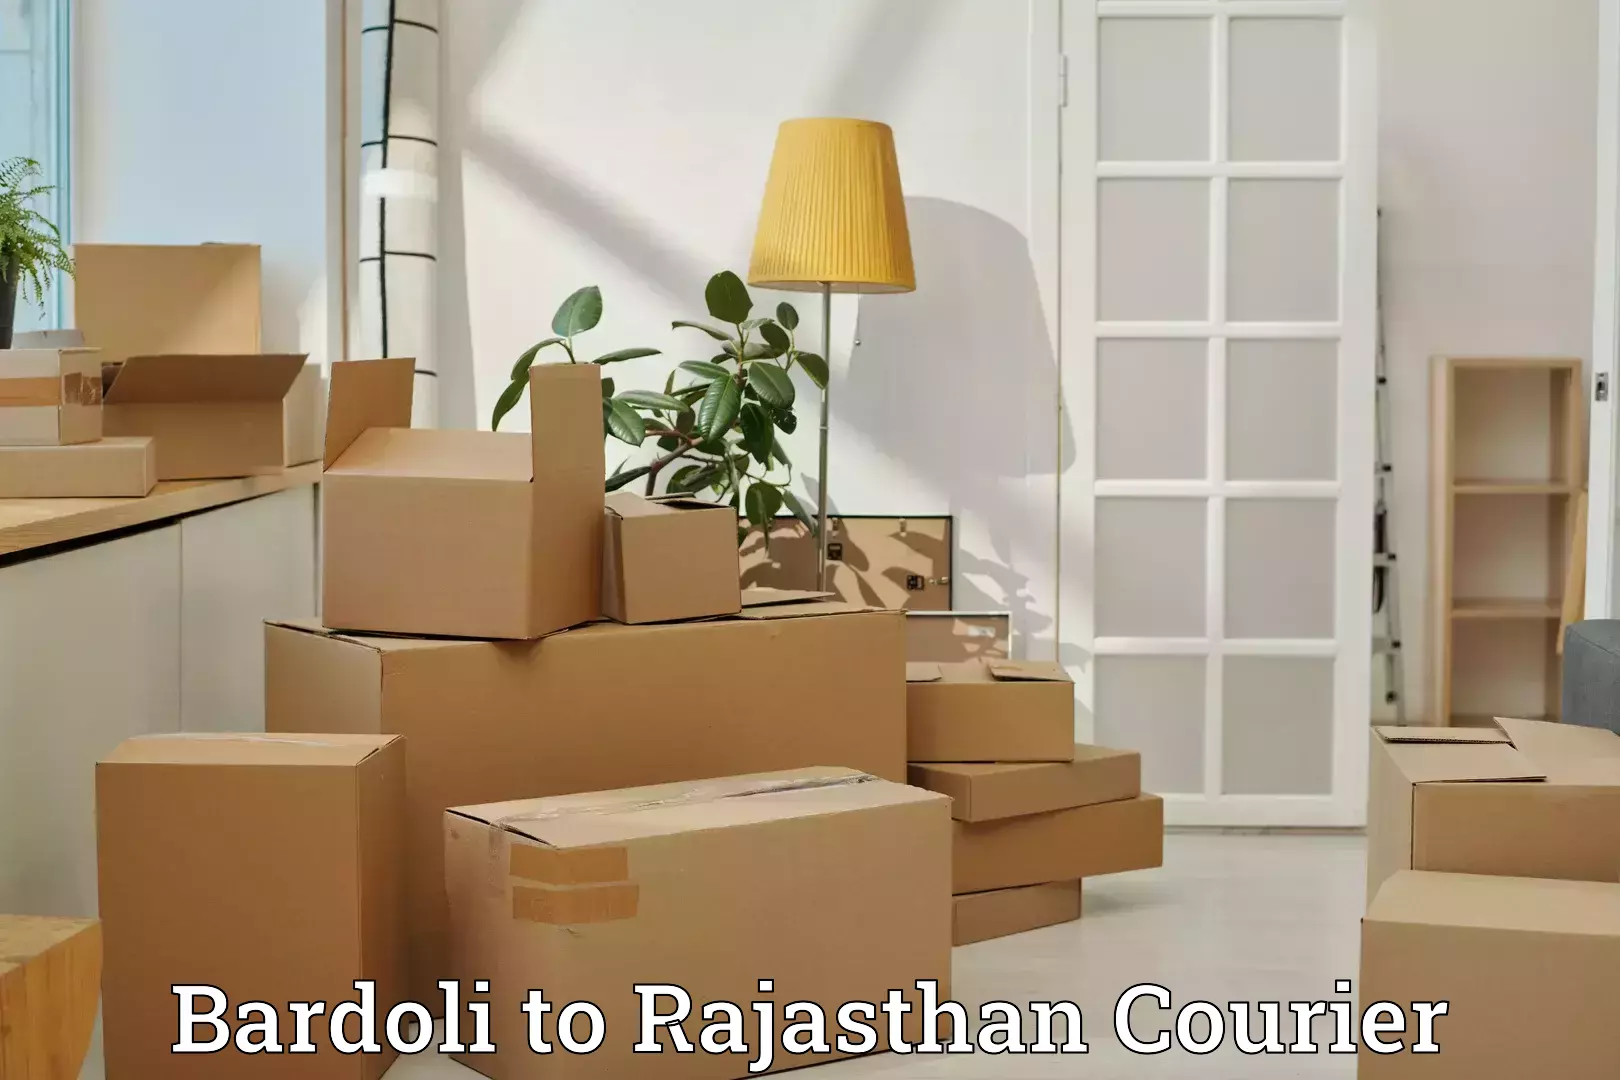 Luggage shipment specialists Bardoli to Kalwar